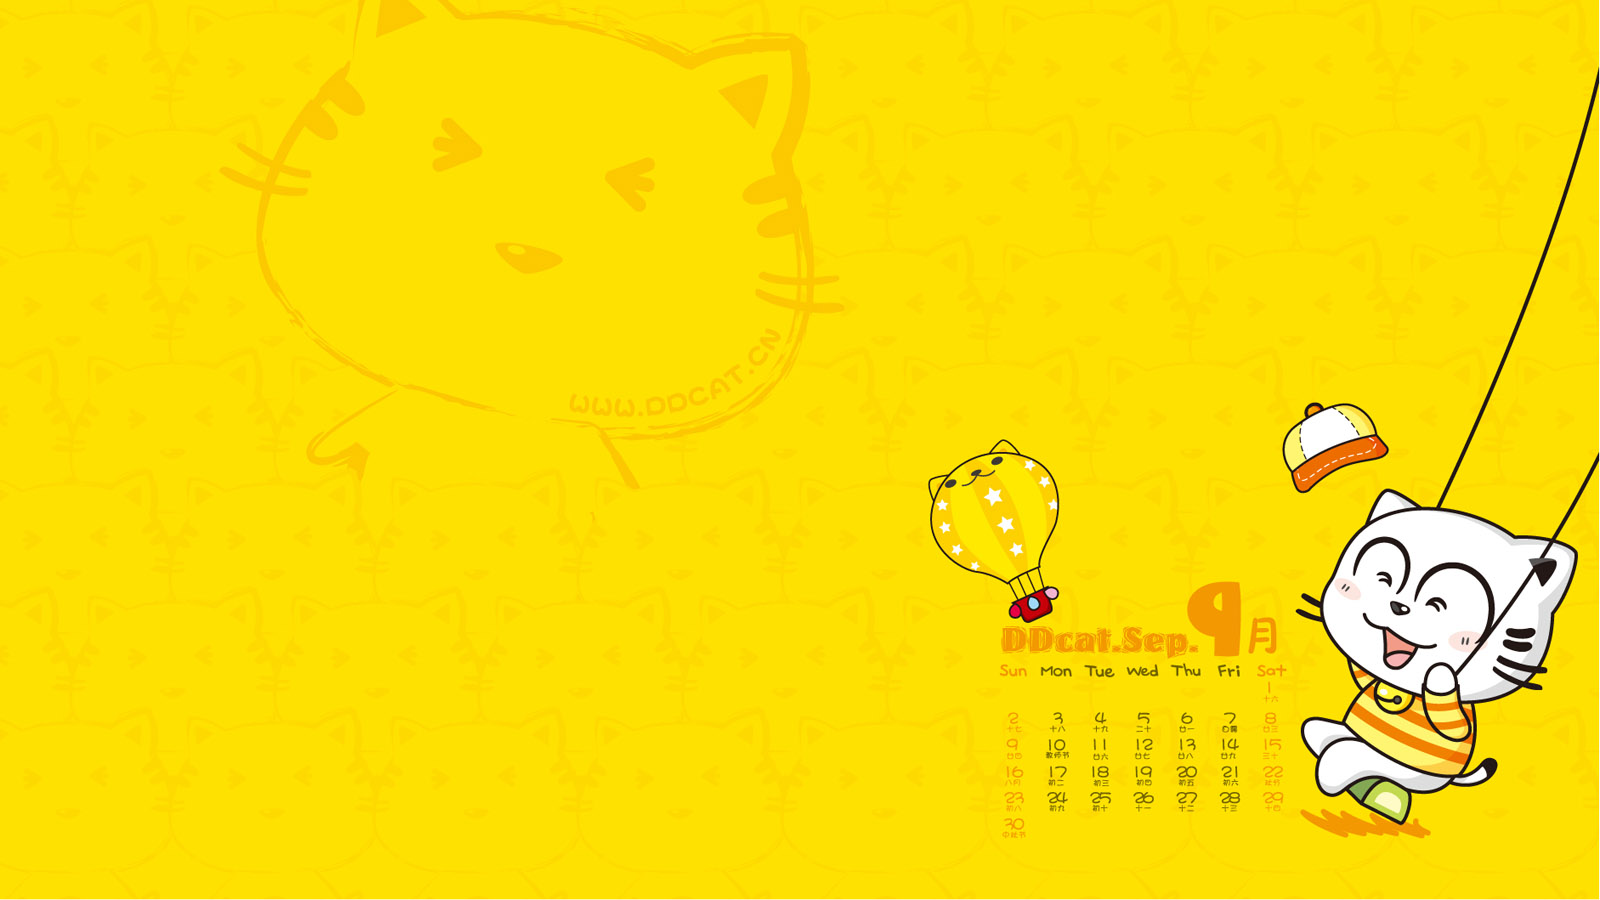 Ding Dong cat September 2012 calendar wallpaper